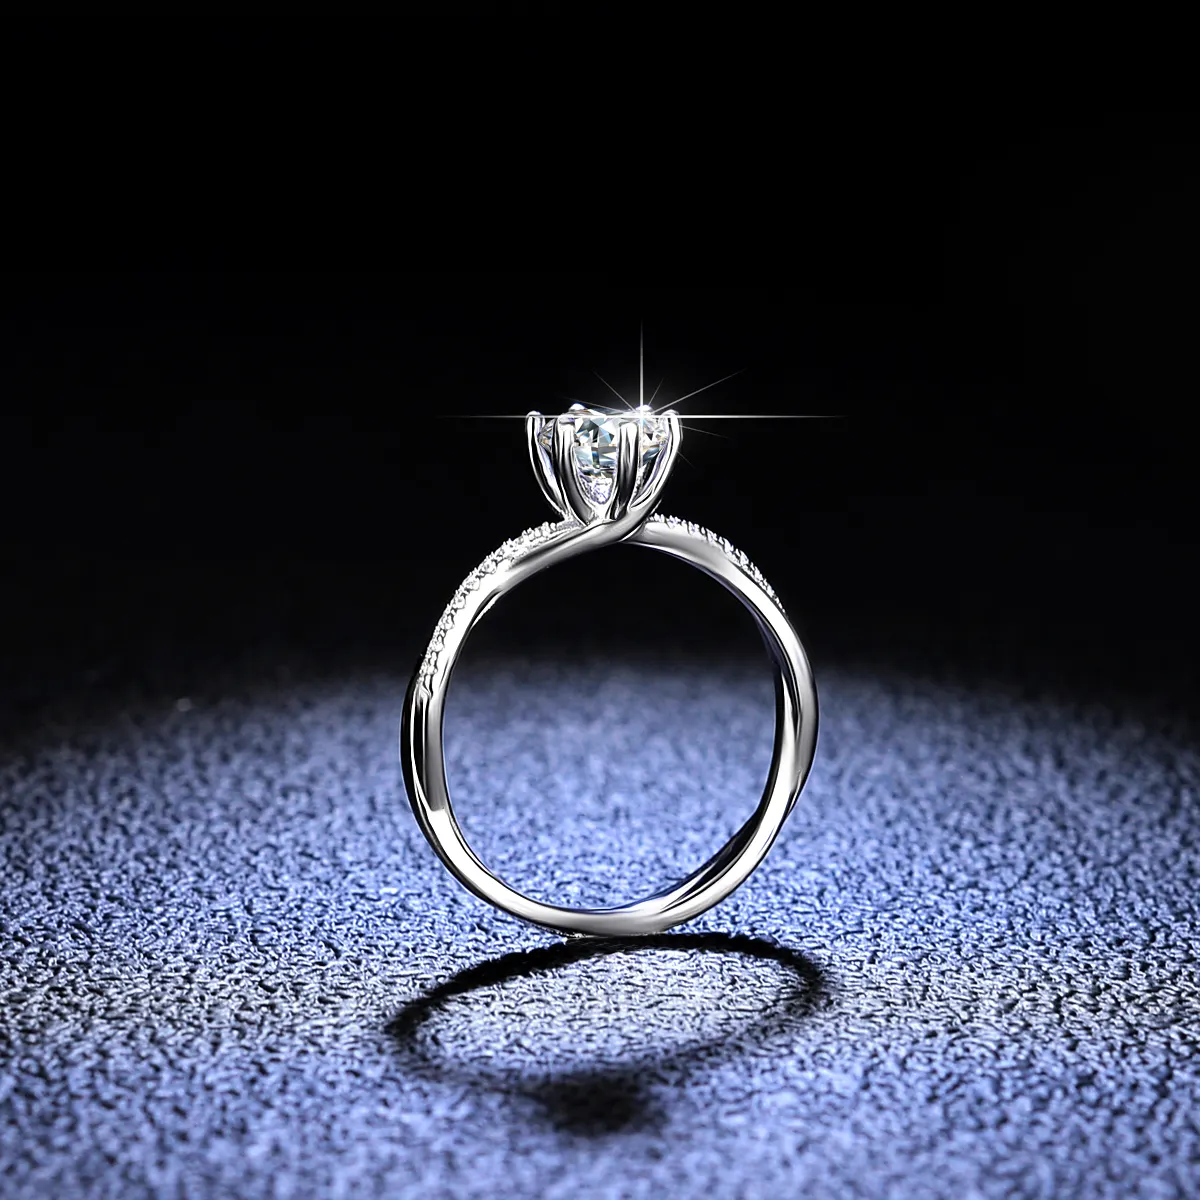 Tốt đồ trang sức thời trang kim cương nhẫn cưới tùy chỉnh kim cương GRA vvs 1 Carat 925 Bạc Eternity cưới engagement moissanite Nhẫn